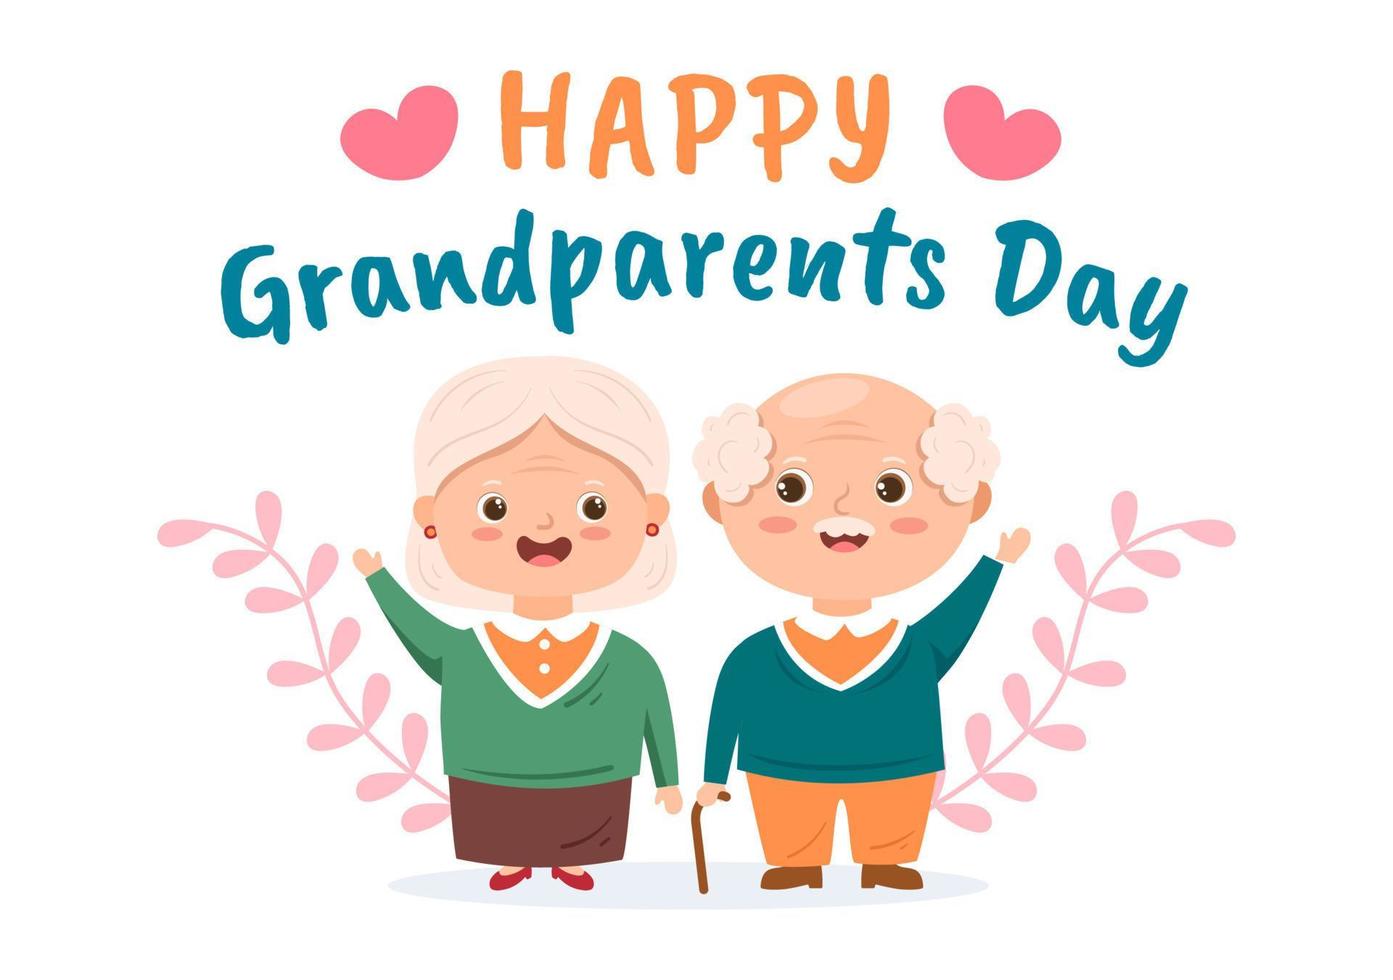 gelukkige grootouders dag schattige cartoon afbeelding met ouder echtpaar, bloemdecoratie, opa en oma in vlakke stijl voor poster of wenskaart vector